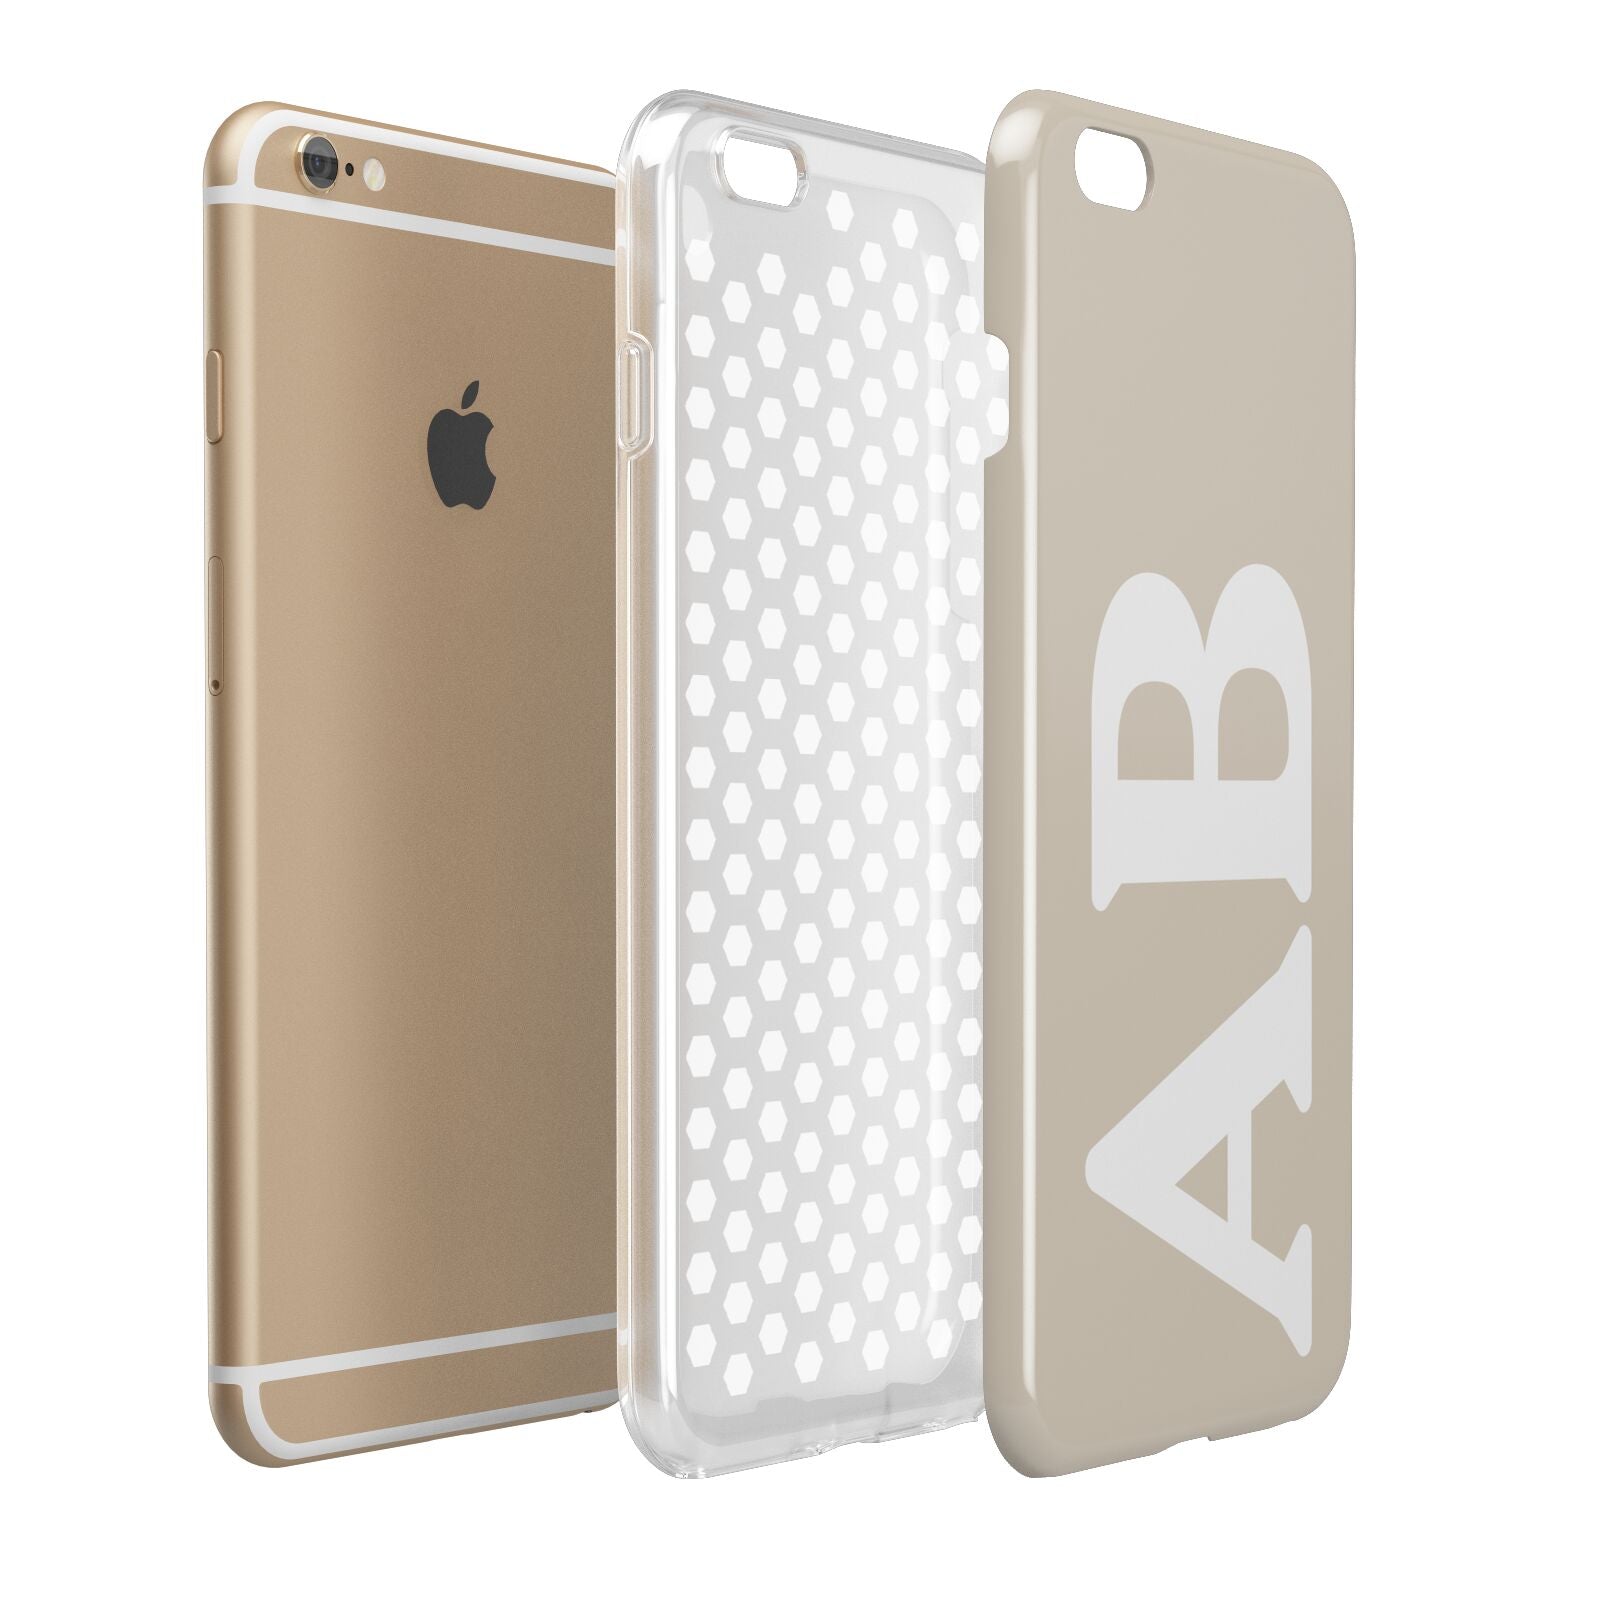 Initials Apple iPhone 6 Plus 3D Tough Case Expand Detail Image